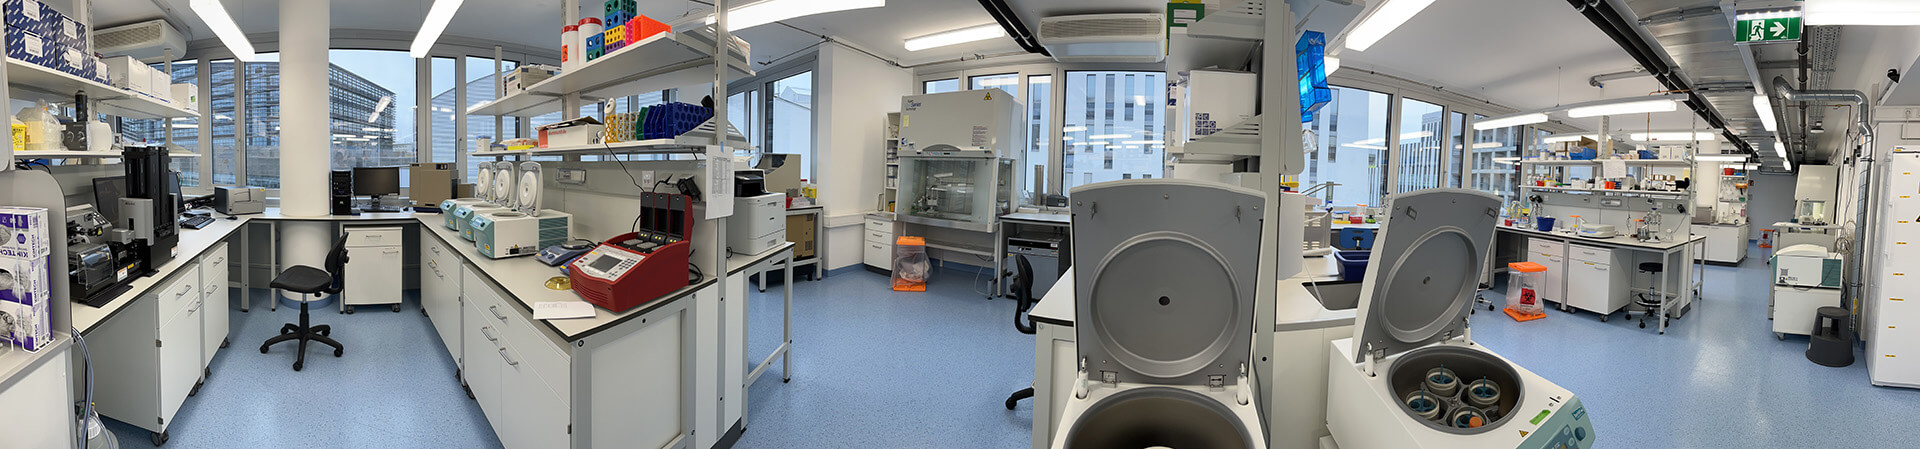 X4 Lab in Vienna